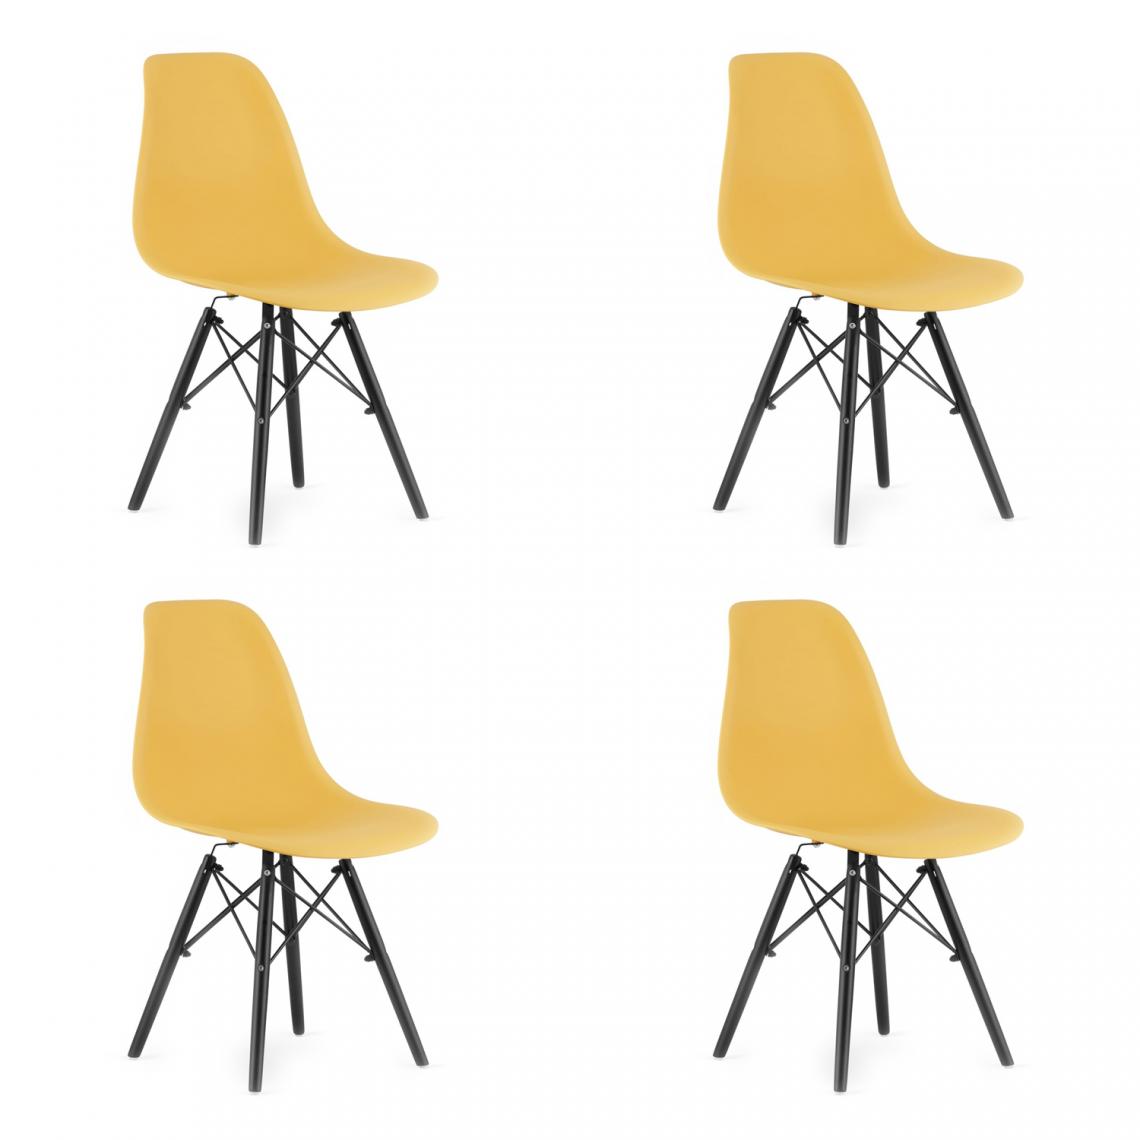 Hucoco - OSATA - Lot de 4 chaises en PP style moderne salon/cuisine - 81x54x46cm - Chaise de salle à manger - Jaune - Chaises